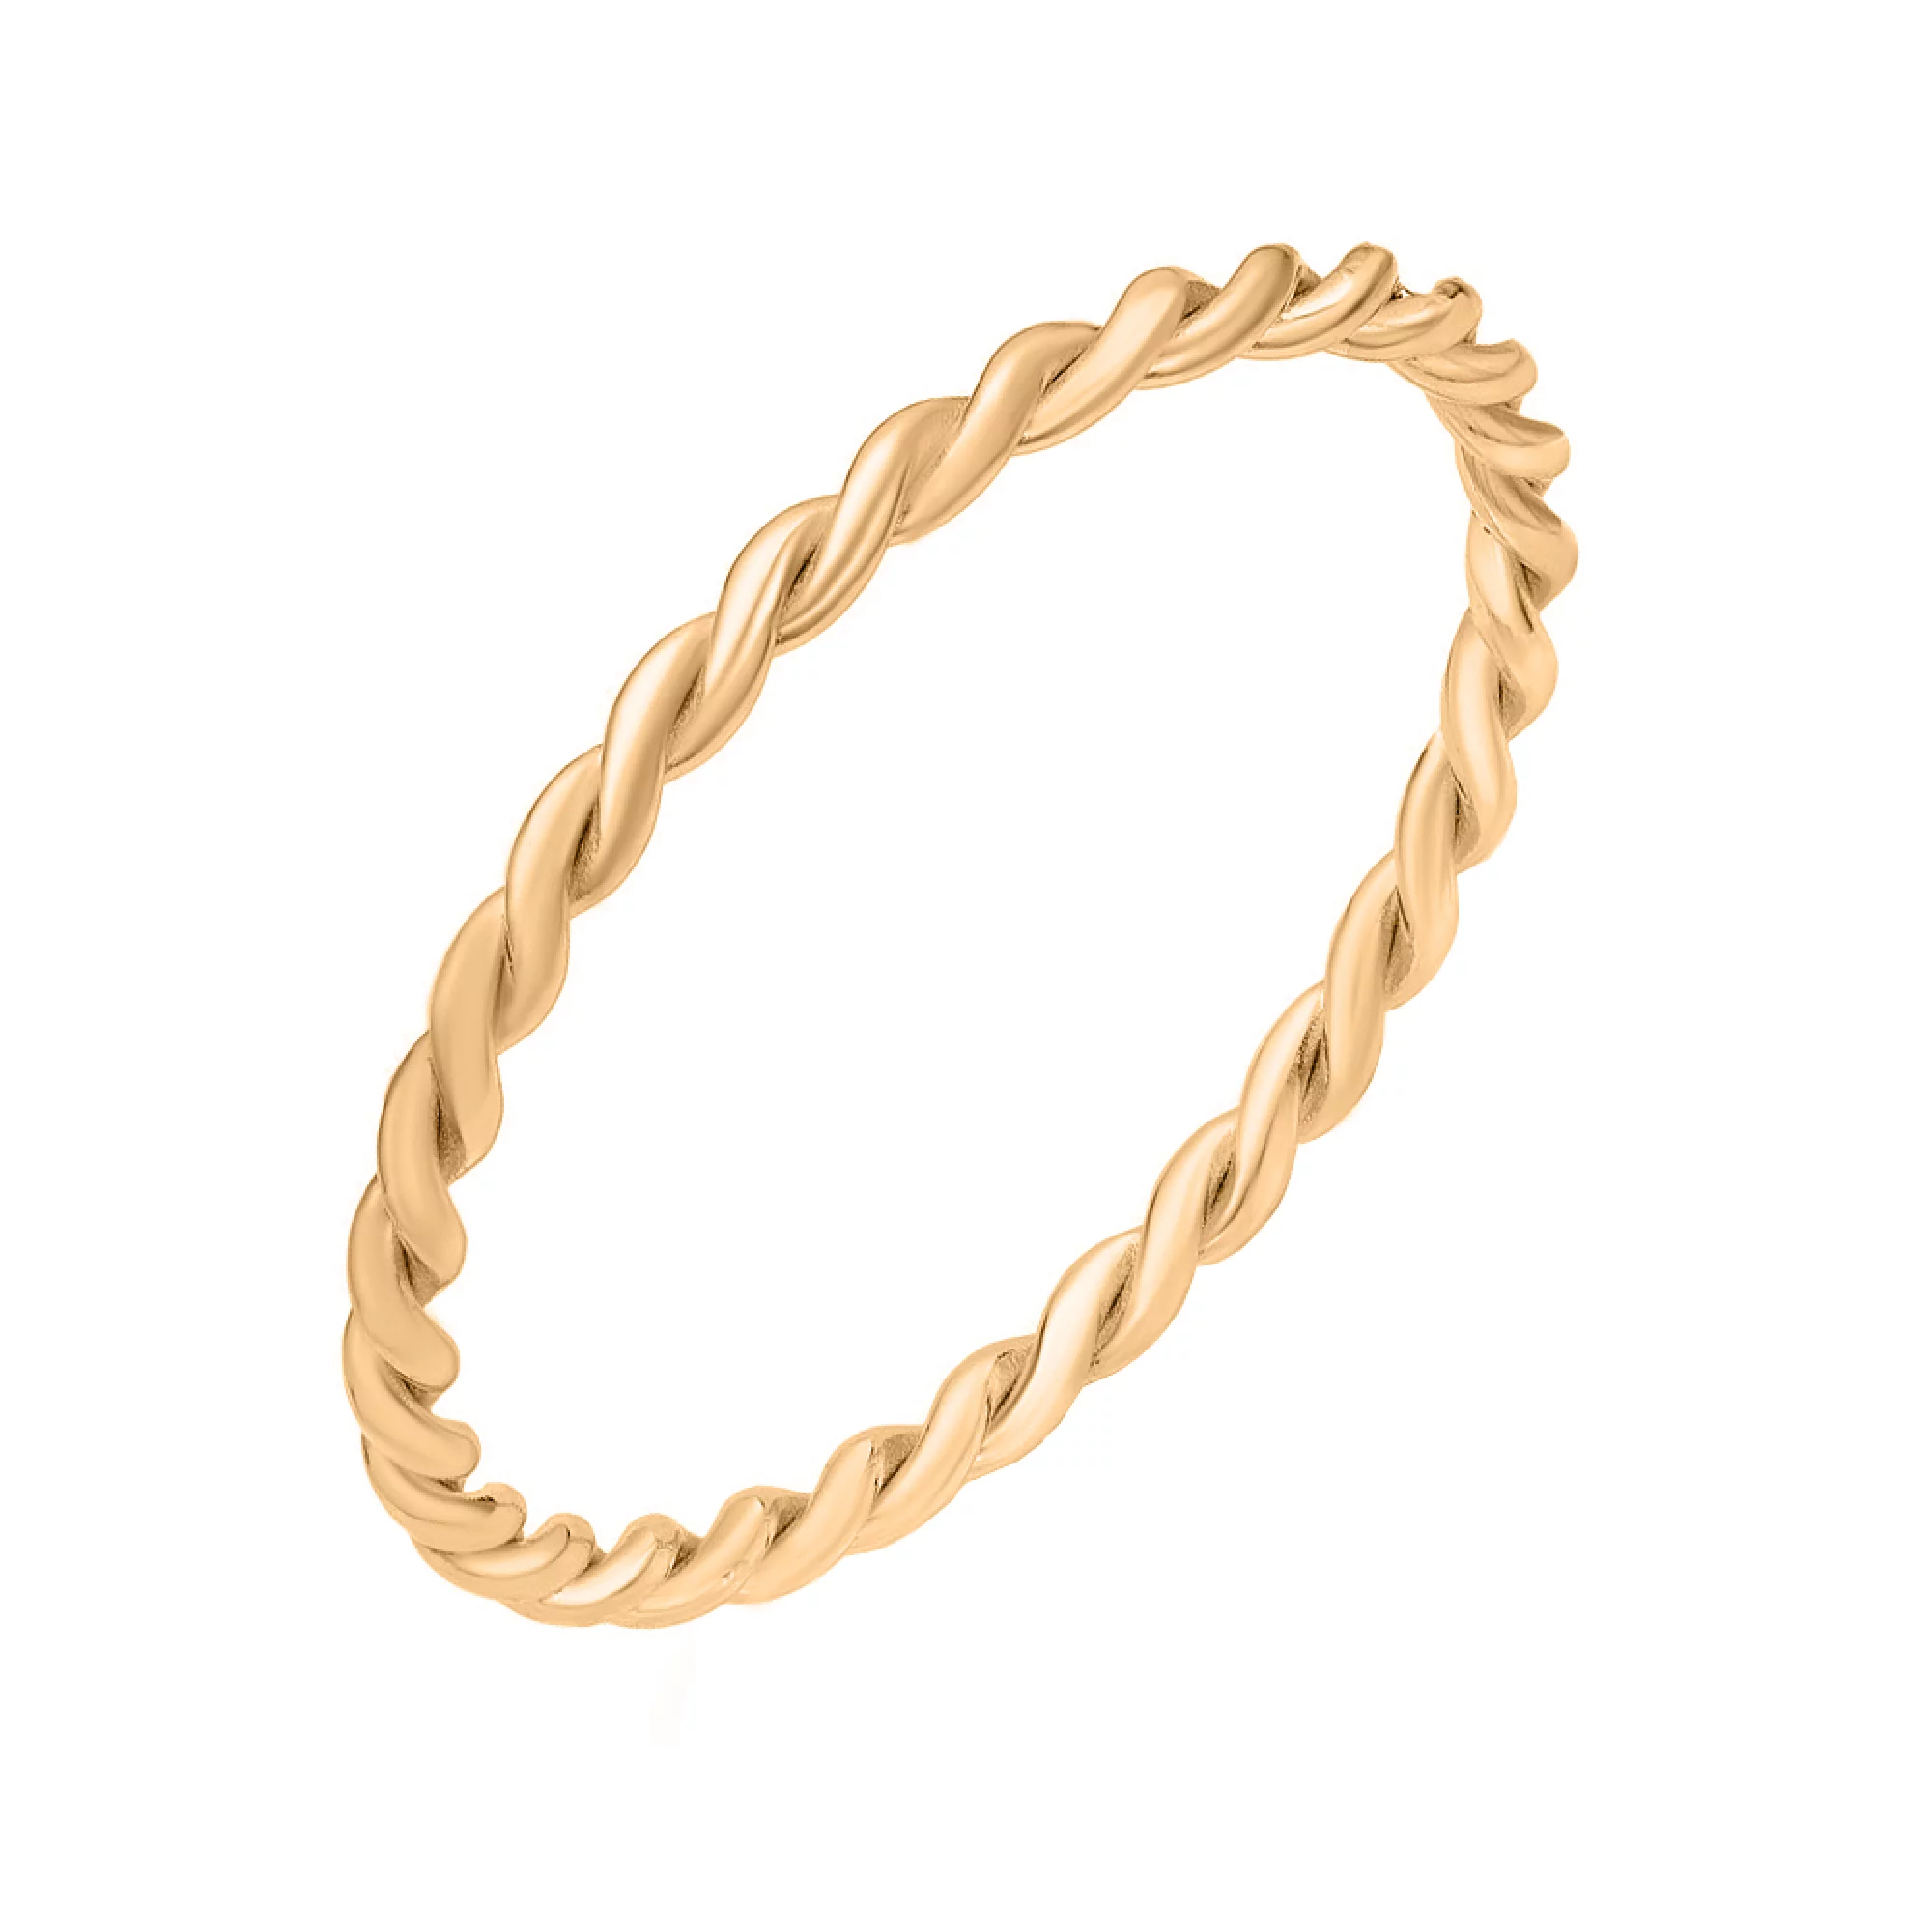 Тонкое золотое кольцо "Переплетение" - 1618605 – изображение 1